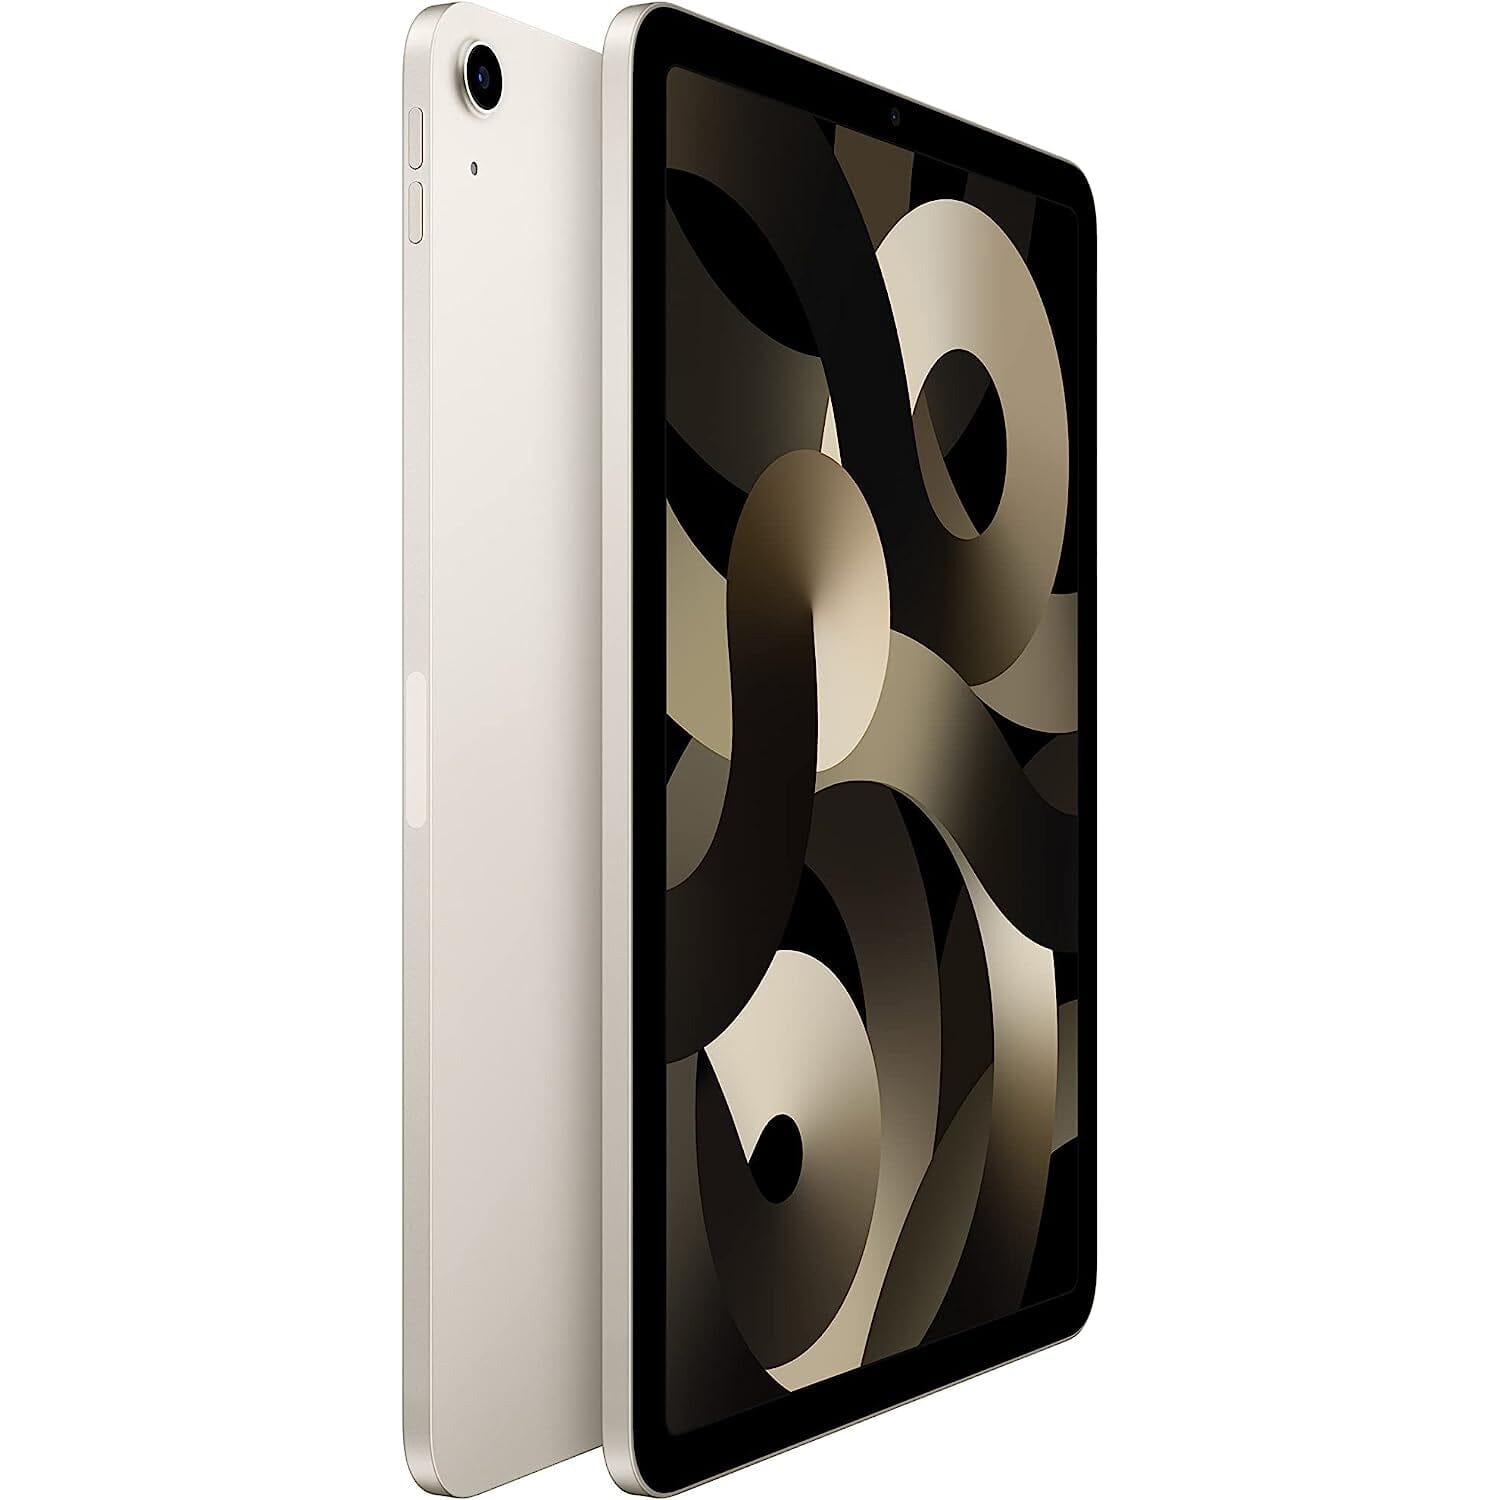 Apple iPad Air 5th Gen Starlight WiFi  (Refurbished)